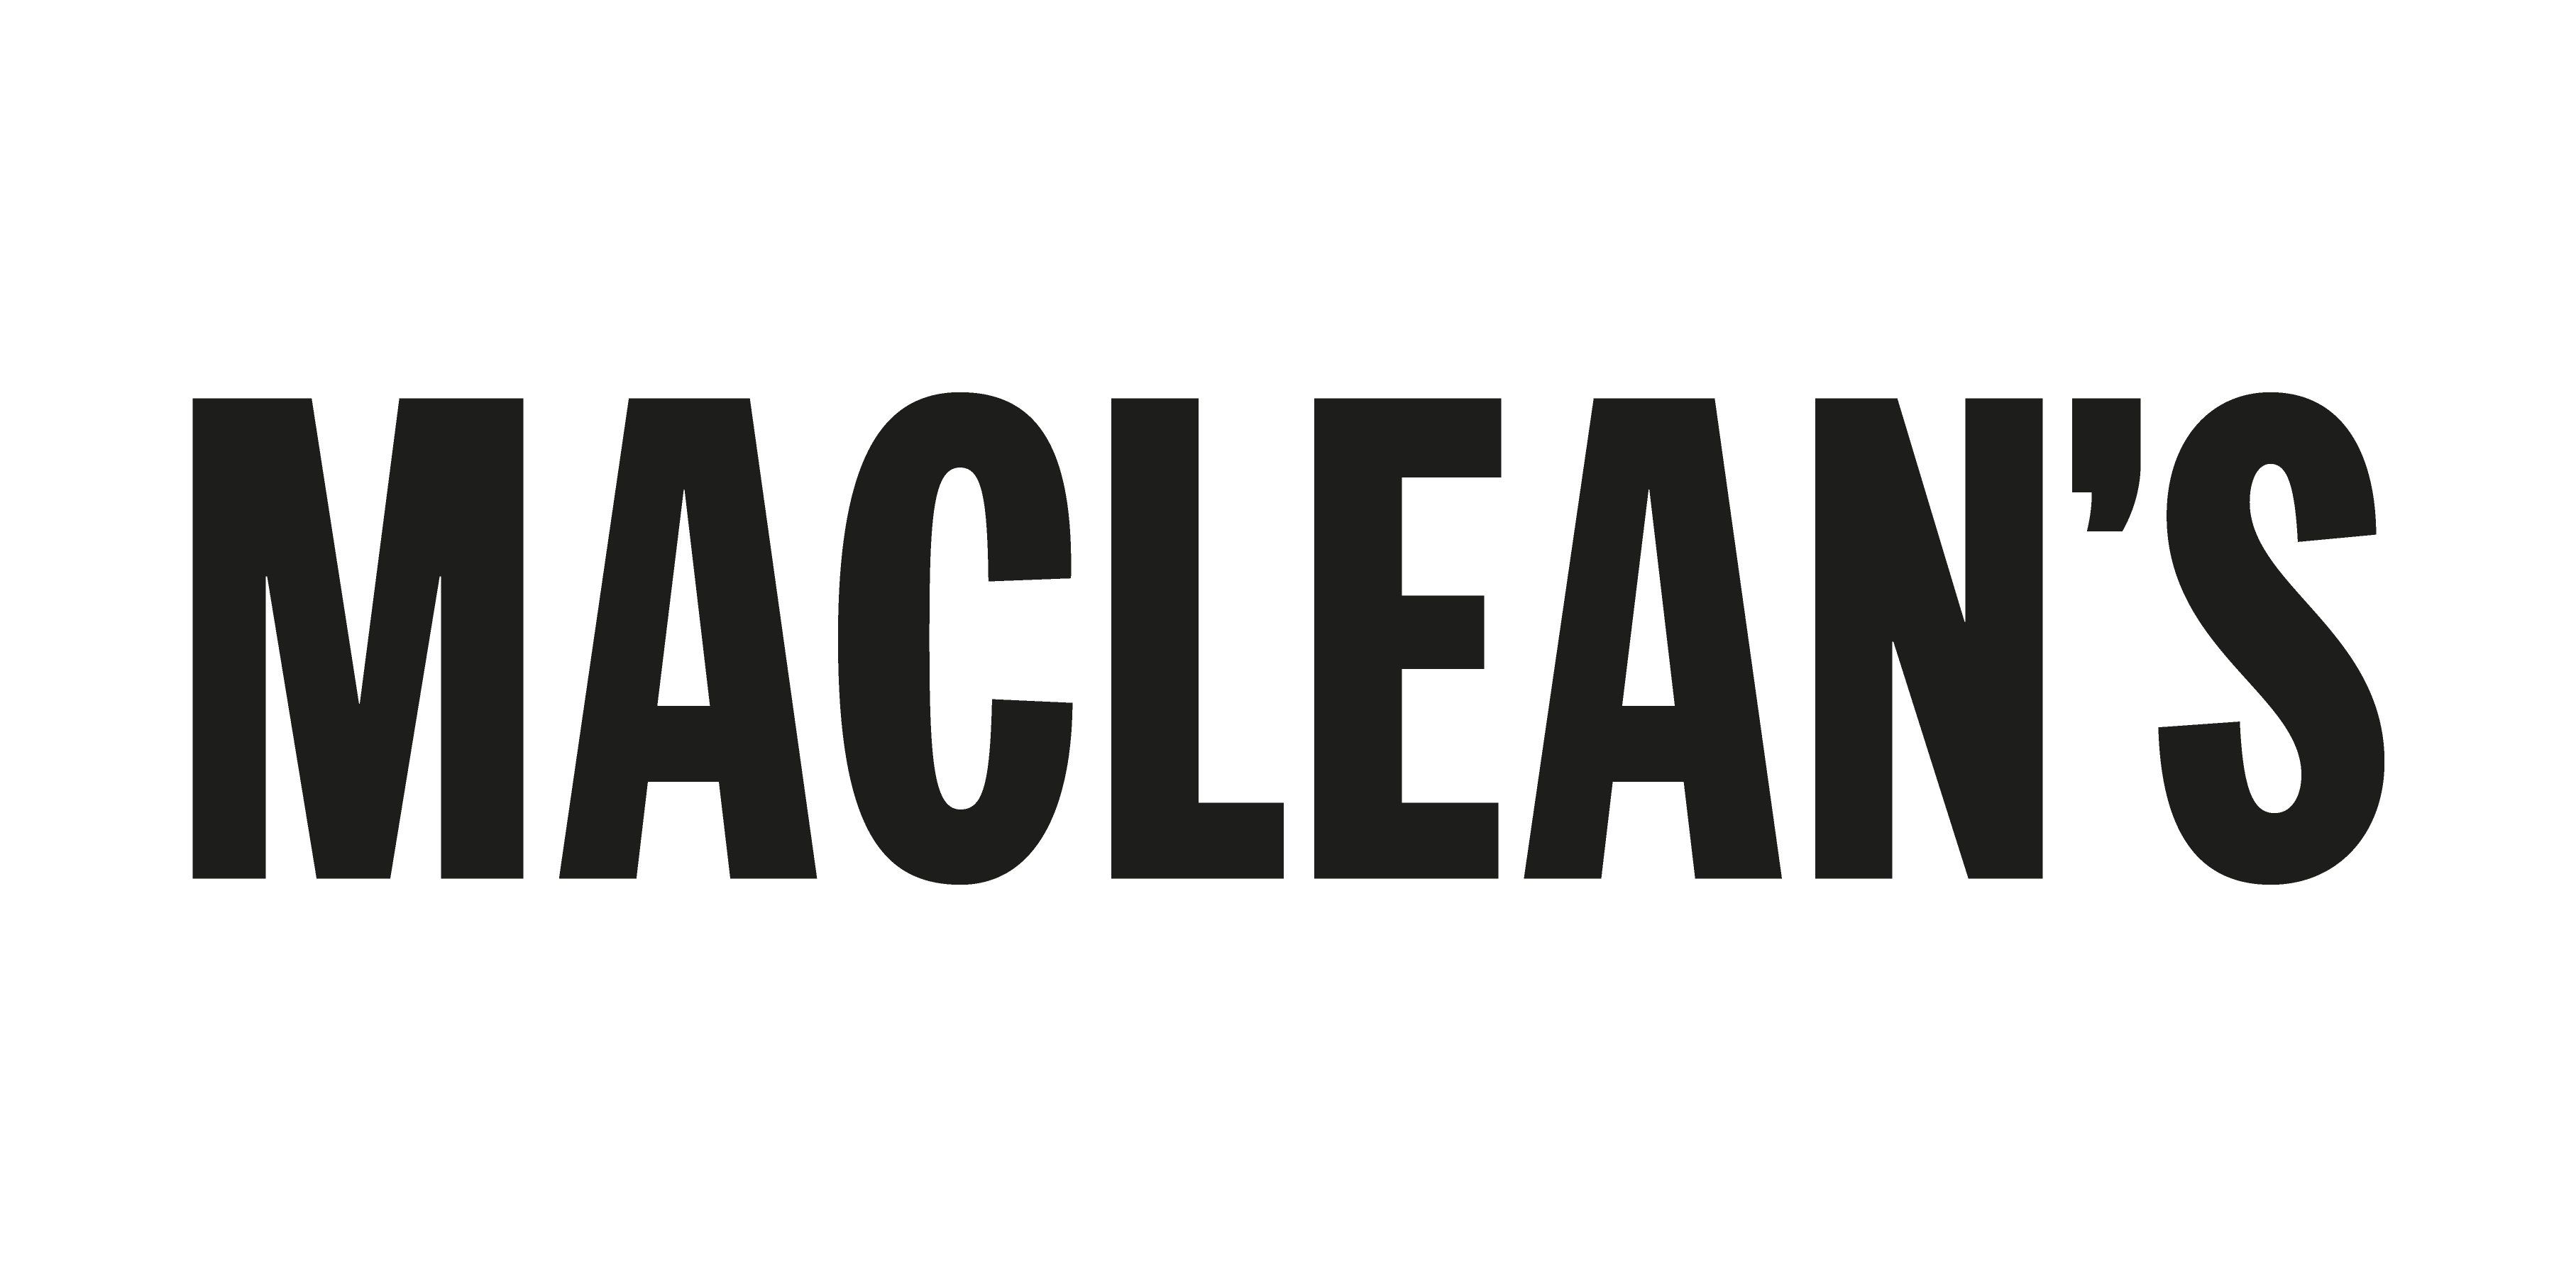 Maclean’s